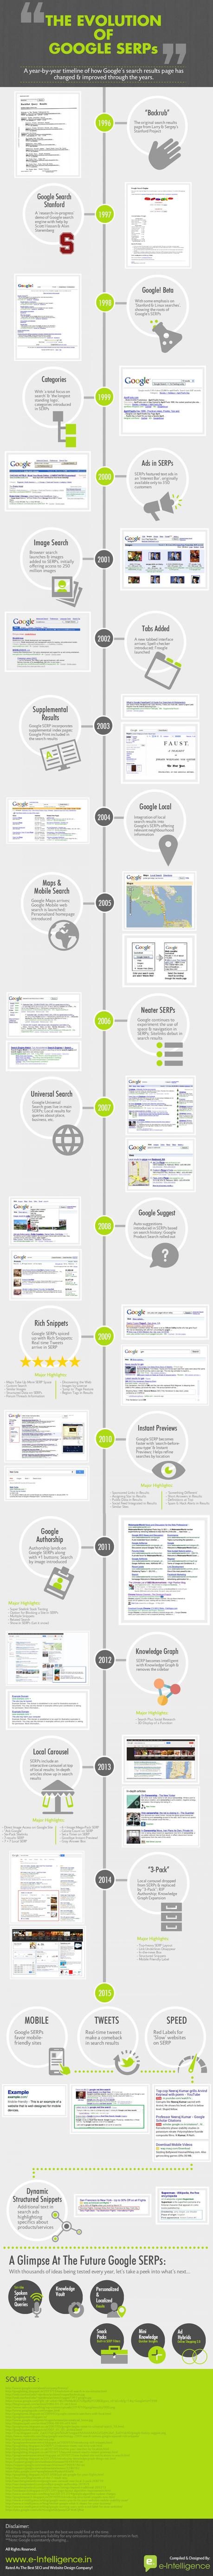 Pasado, presente y futuro de las páginas de resultados de Google